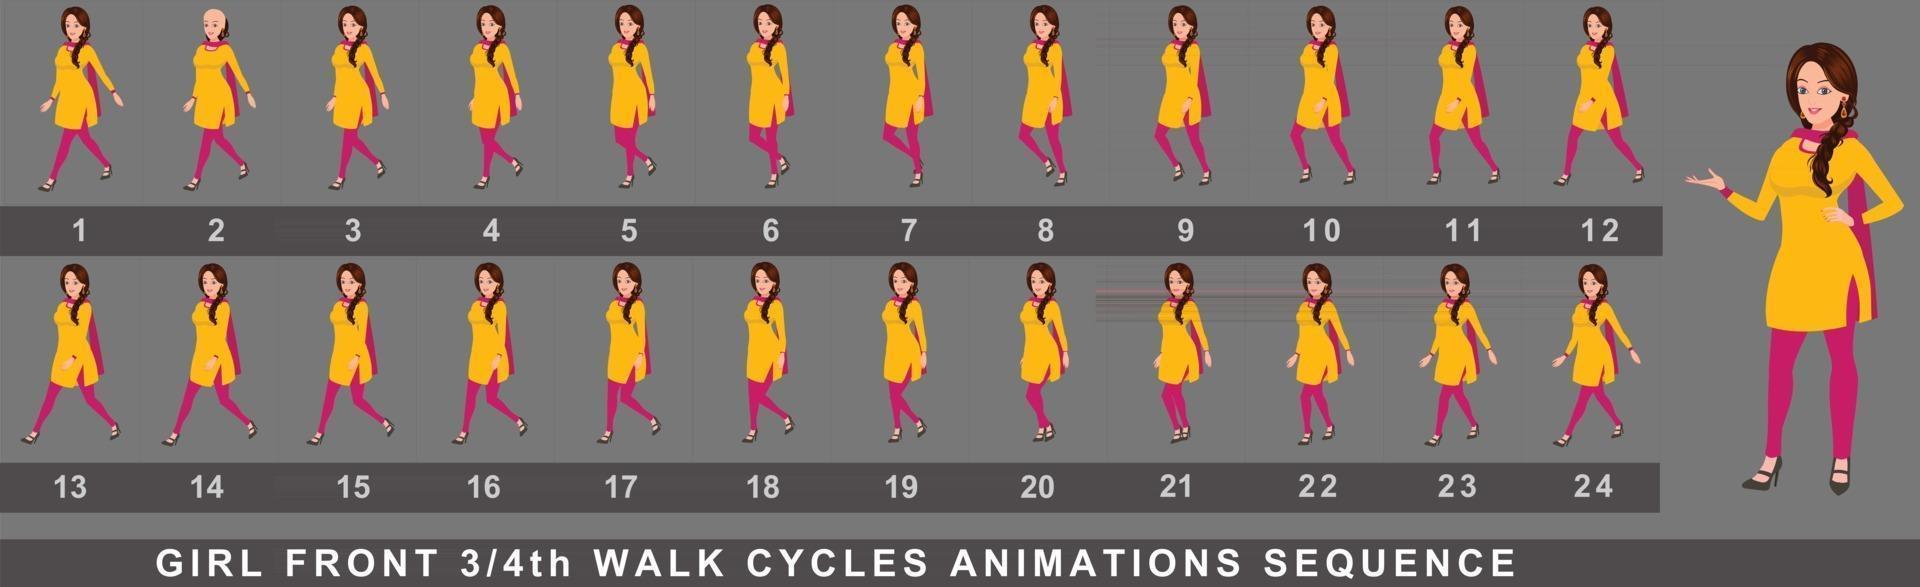 sequência de animação do ciclo de caminhada da personagem feminina vetor